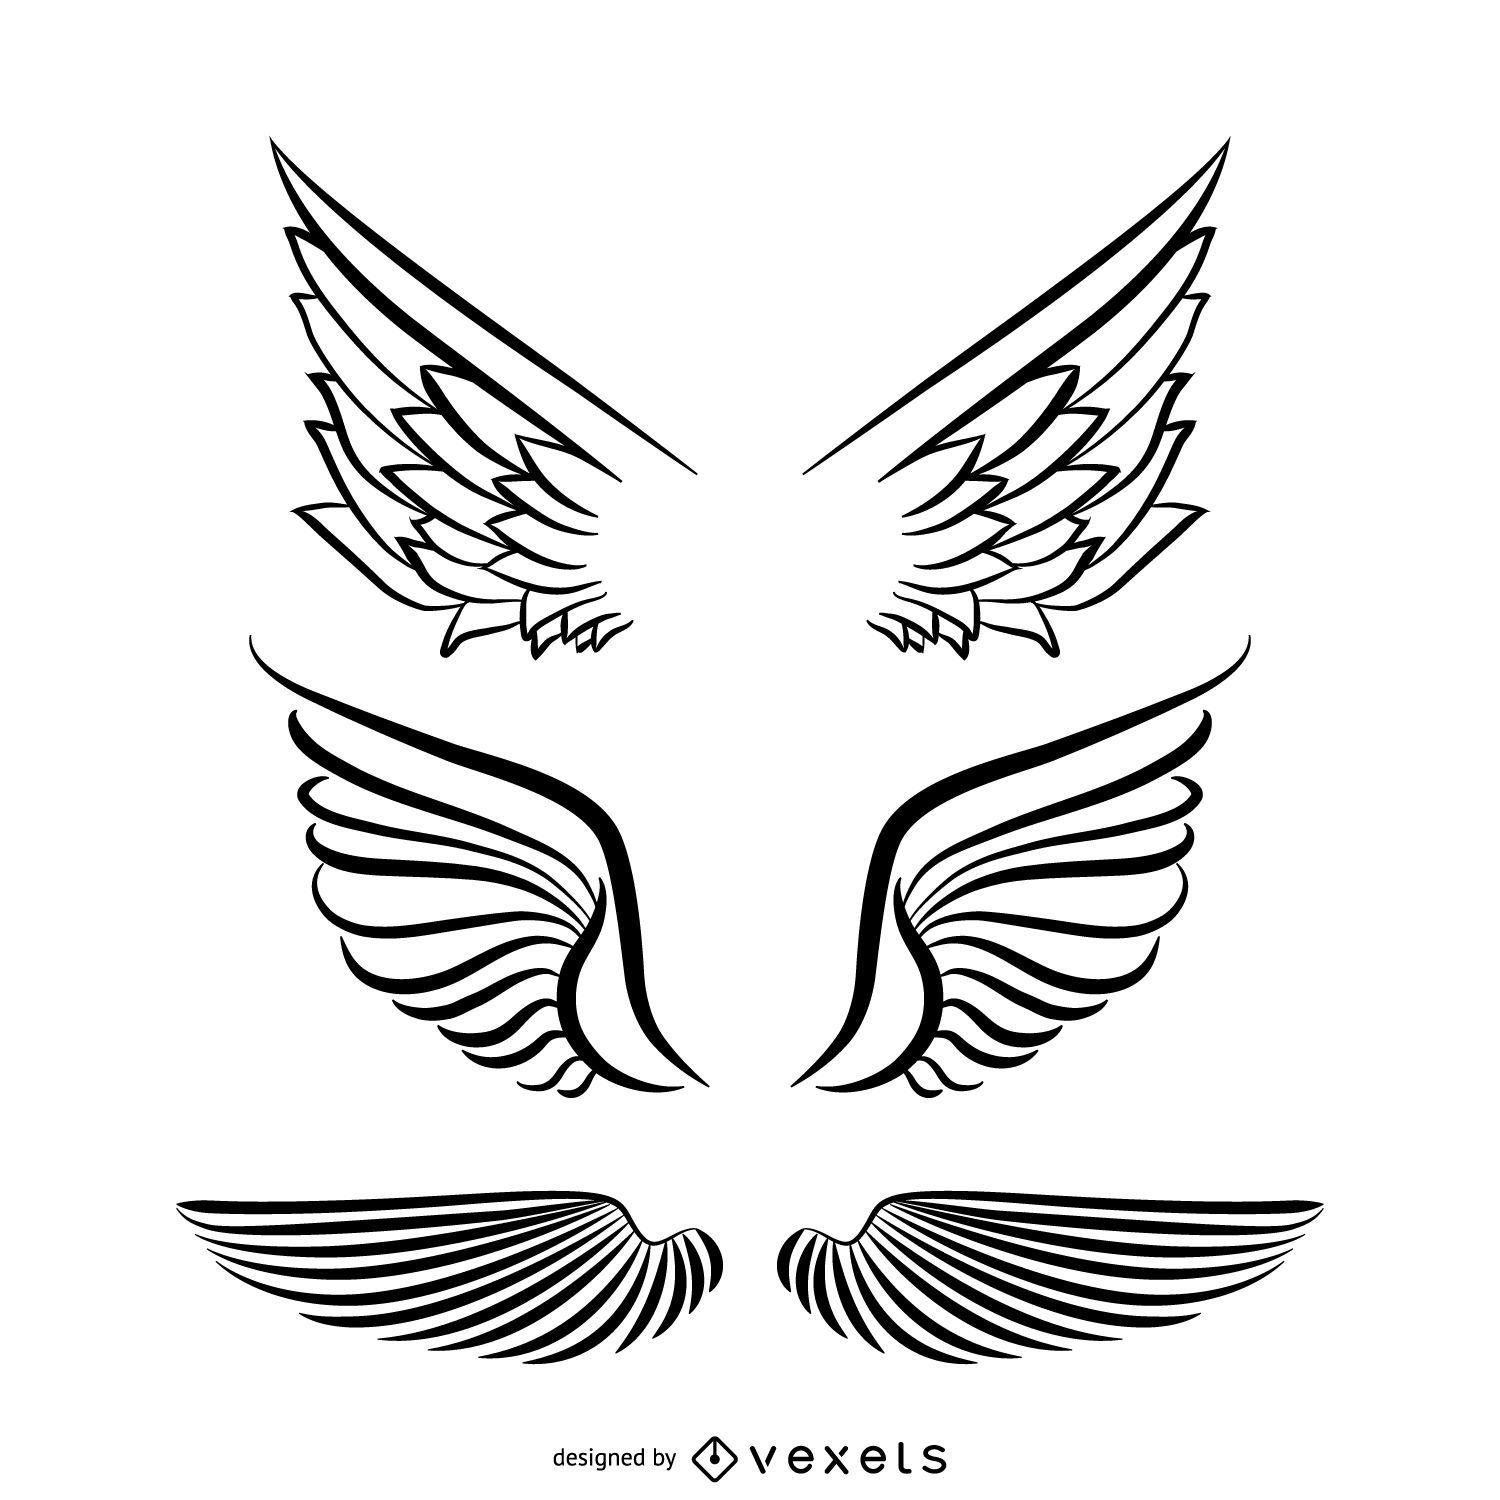 Ilustración de las alas ángel. Diseño: vector de stock (libre de regalías)  2289365543